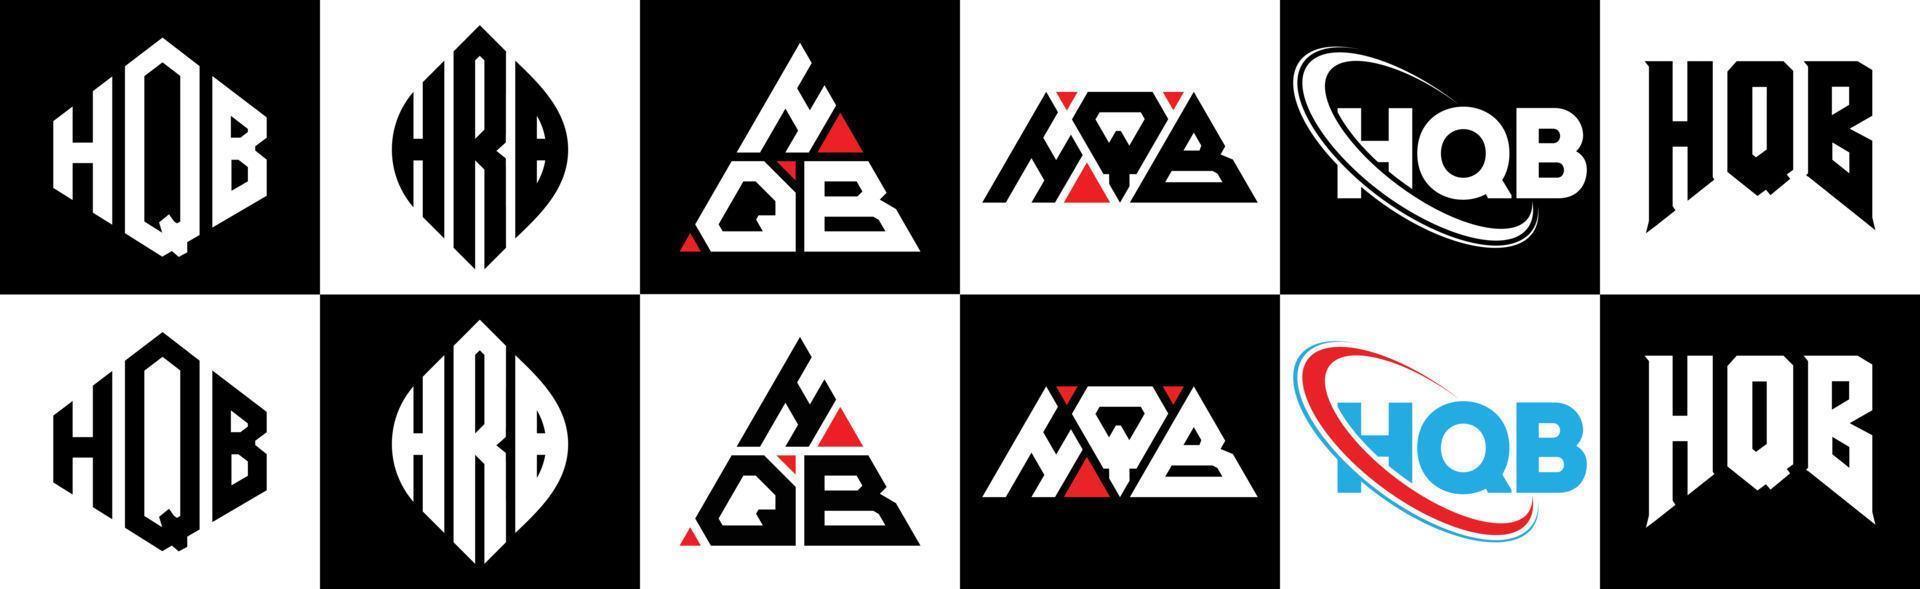 création de logo de lettre hqb en six styles. hqb polygone, cercle, triangle, hexagone, style plat et simple avec logo de lettre de variation de couleur noir et blanc dans un plan de travail. logo hqb minimaliste et classique vecteur